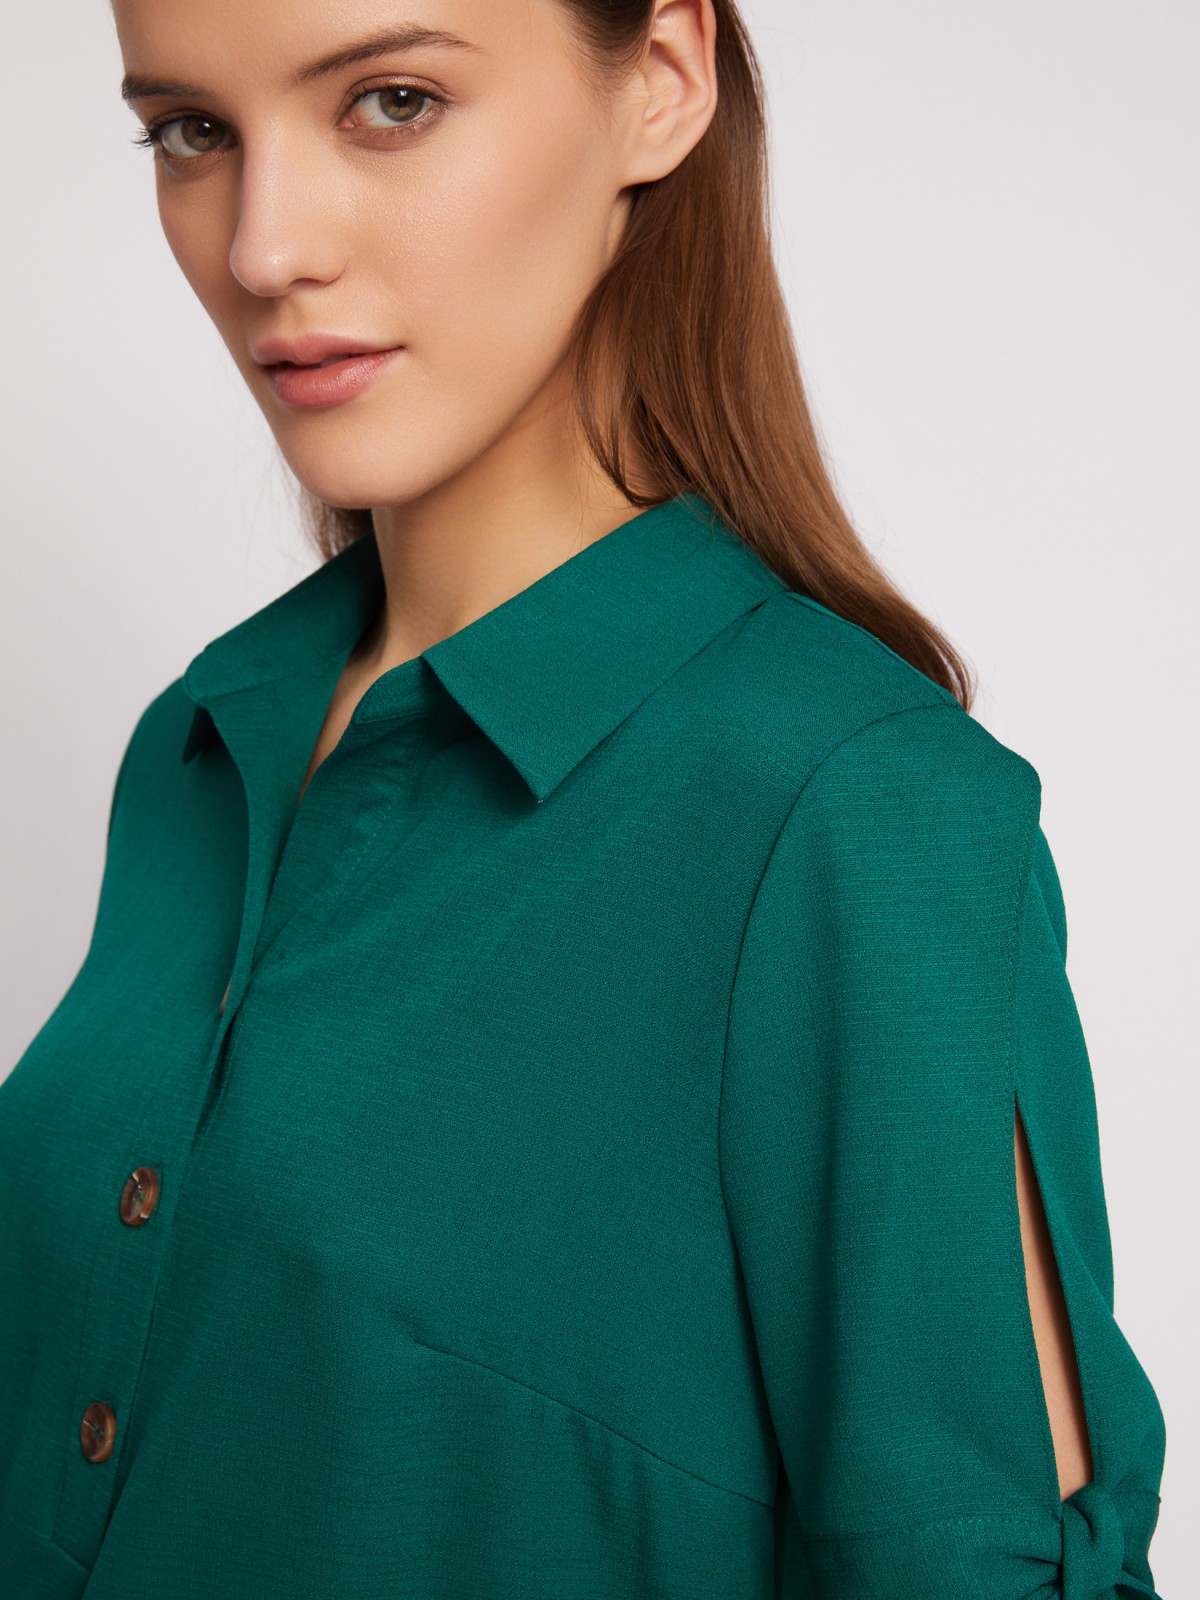 Платье-рубашка мини с акцентом на рукавах zolla 024218239333, цвет темно-зеленый, размер XXXL - фото 5